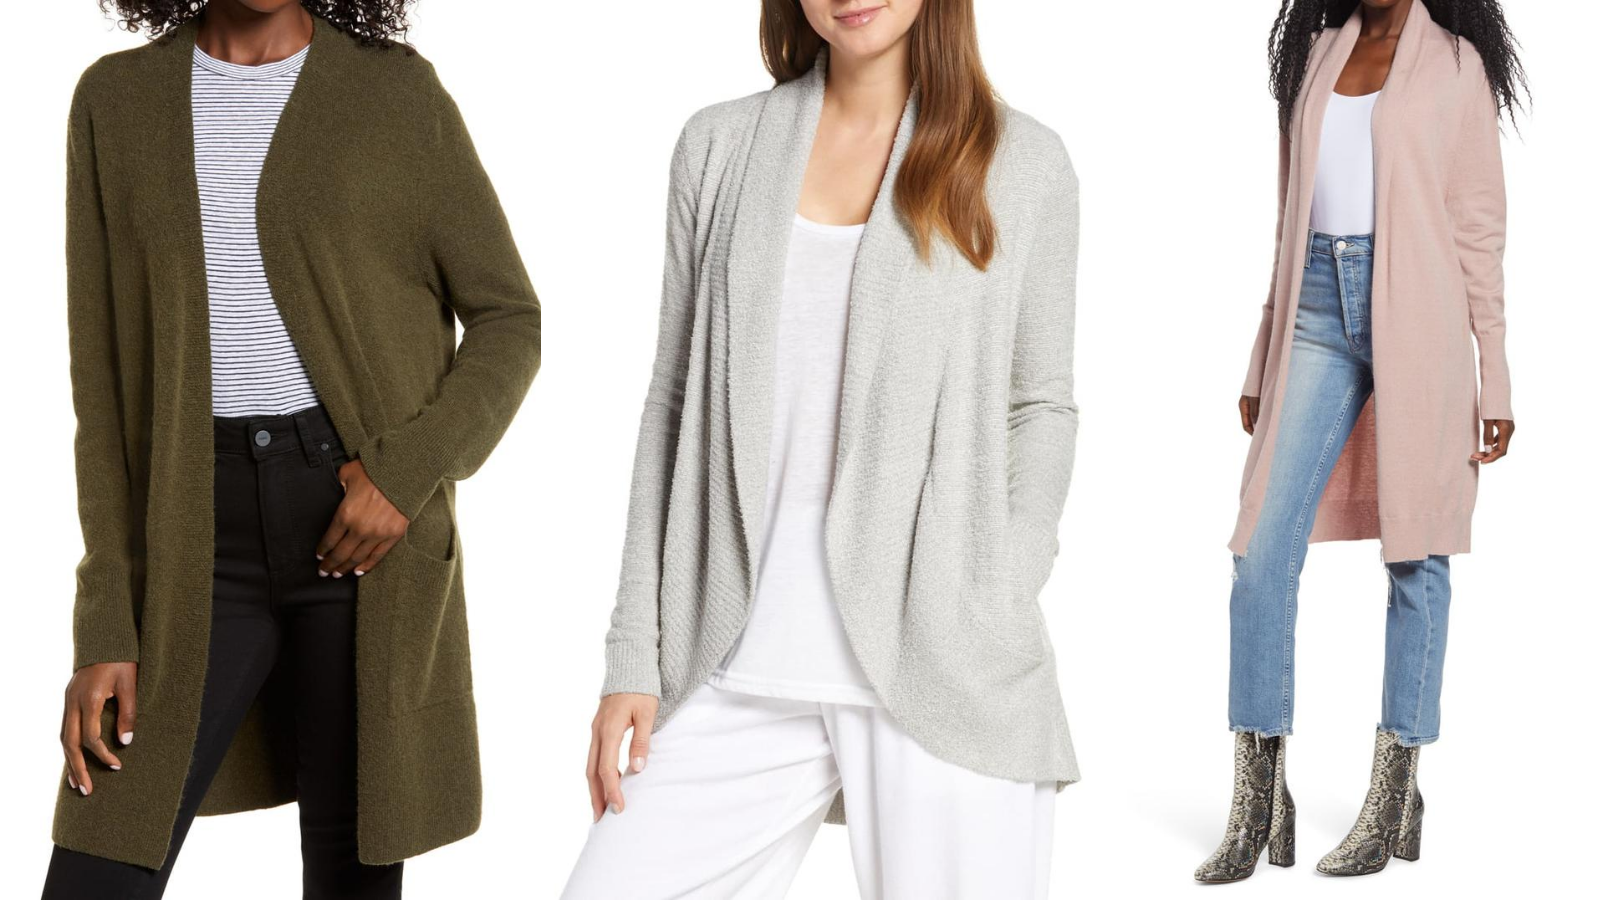 Fall Women Long Sleeve Irregular Print Casual Cardigan Coat Tops Blouse by iYBUIA